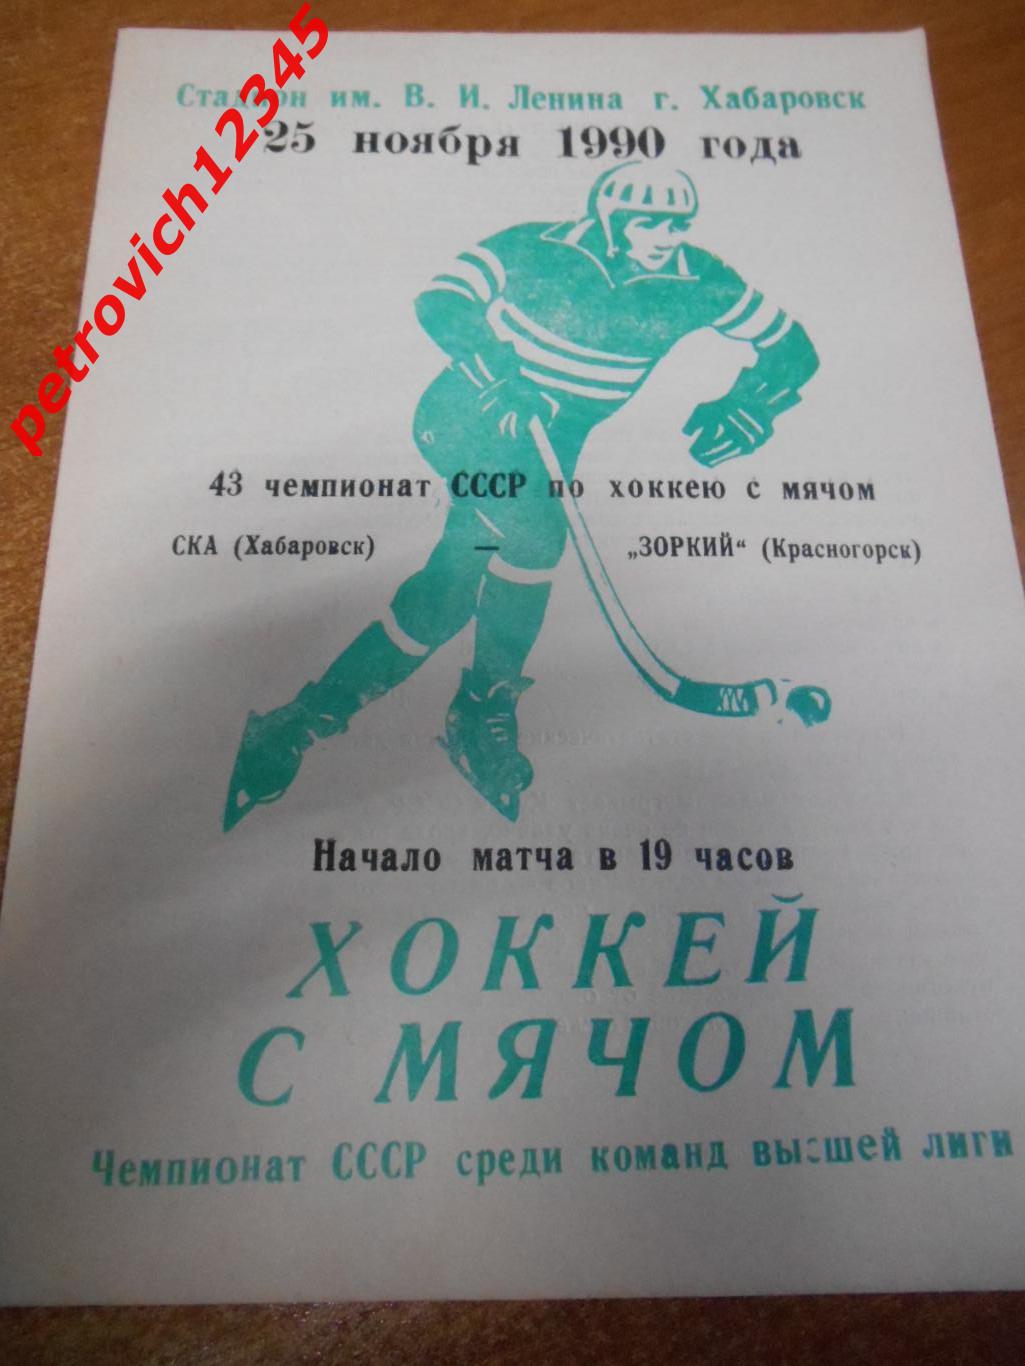 Ска Хабаровск - Зоркий Красногорск - 25 ноября 1990г